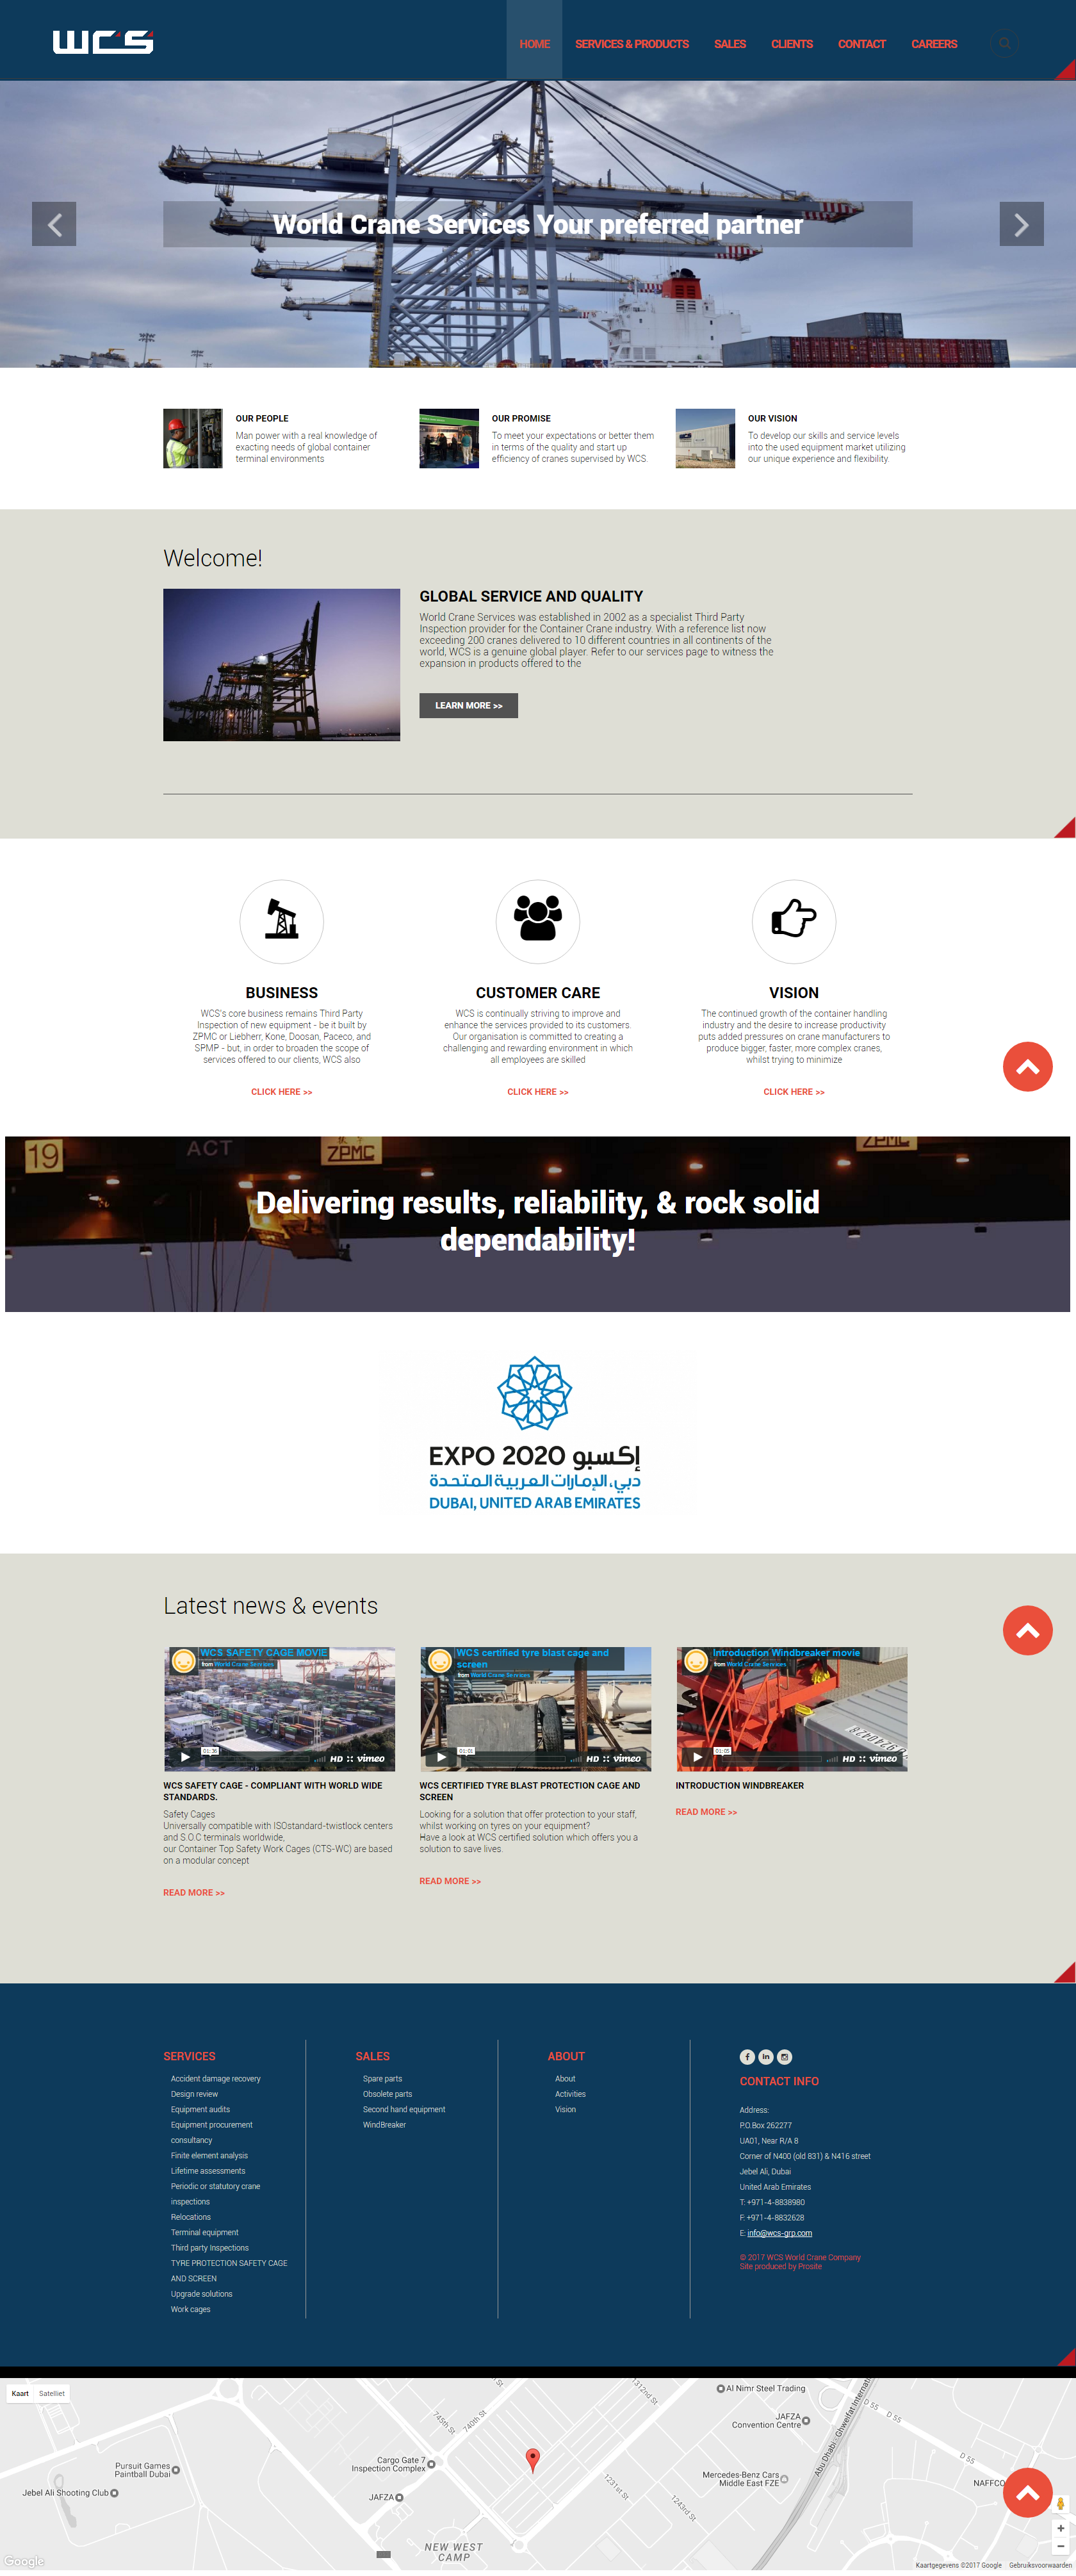 World Crane Services website screenshot